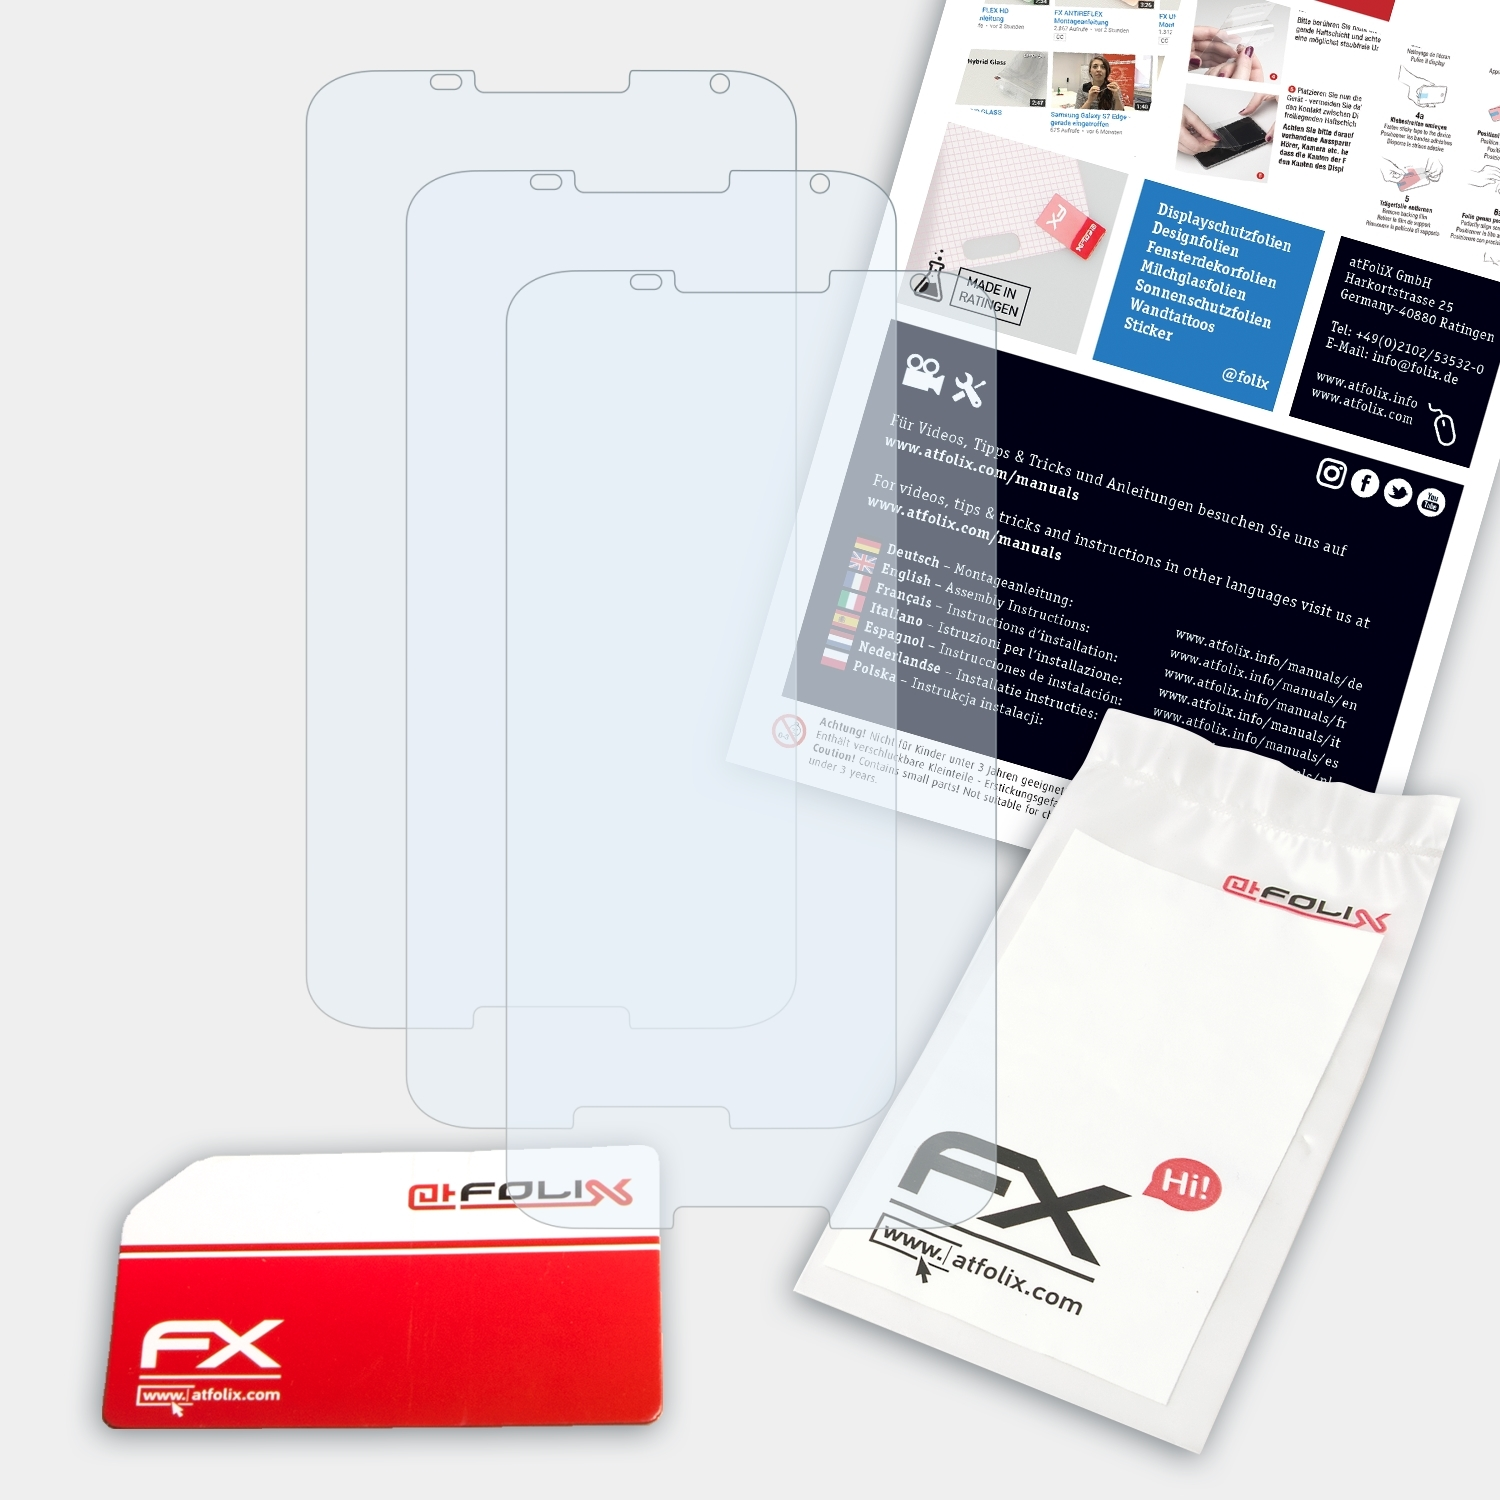 Google Nexus ATFOLIX FX-Clear Displayschutz(für 3x 6)